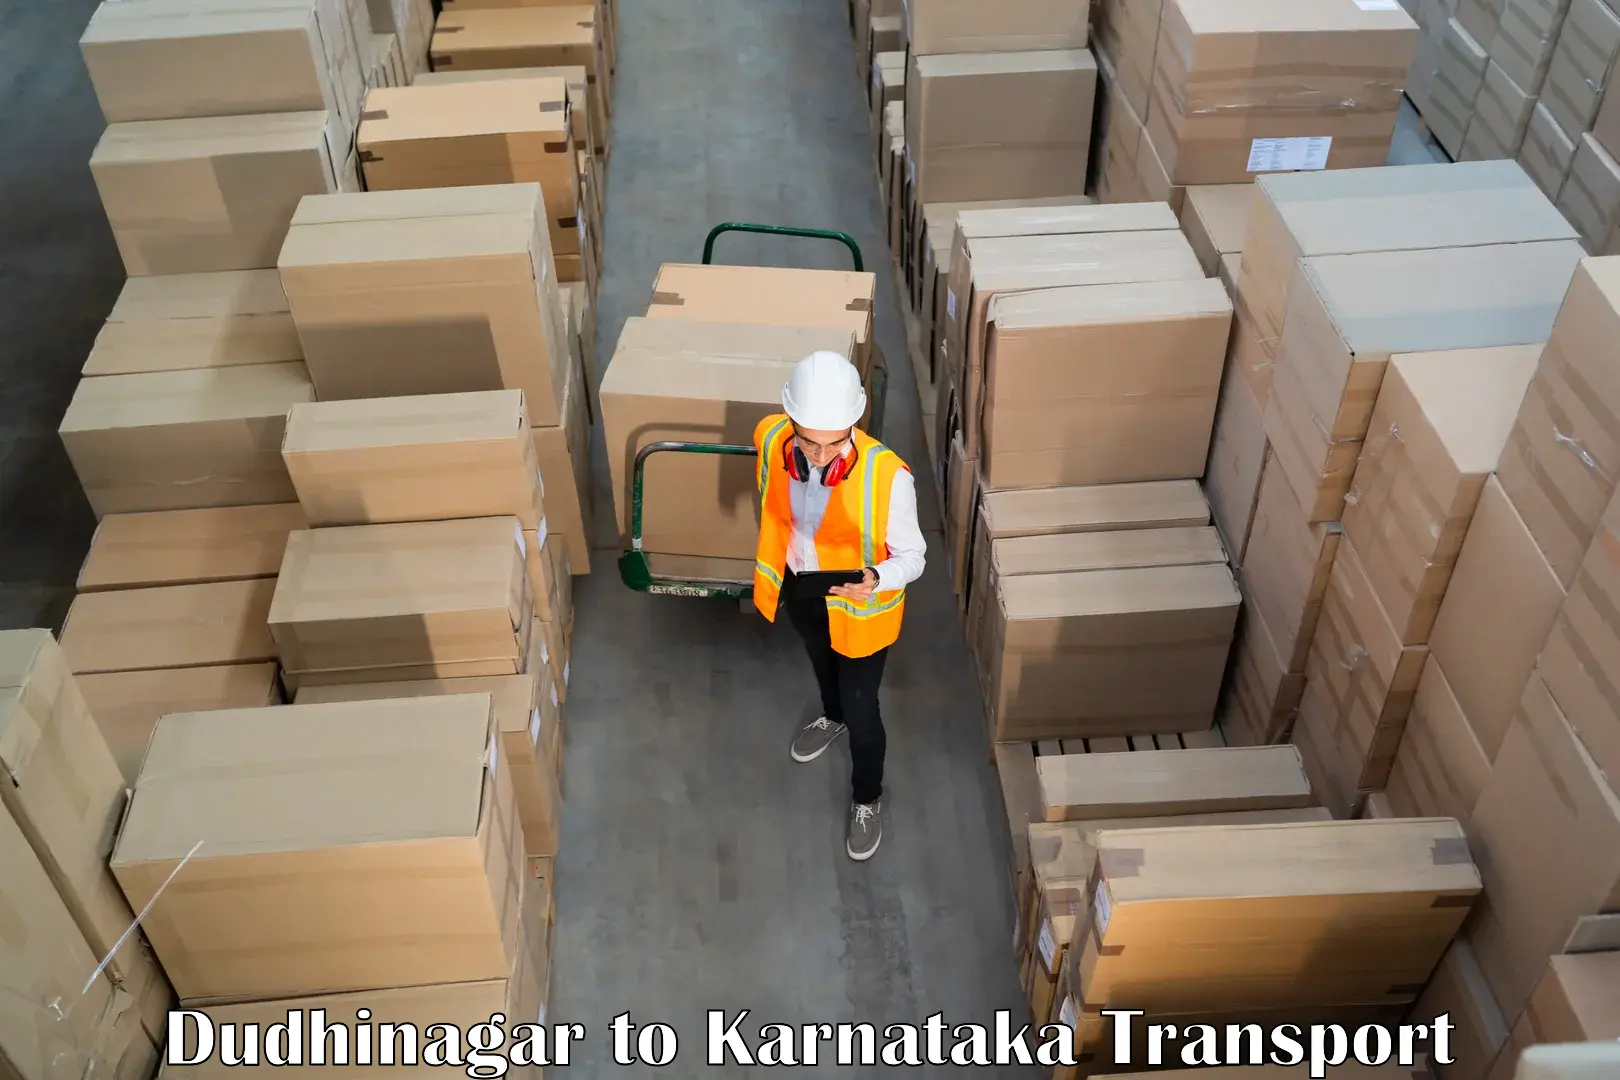 Cargo transport services Dudhinagar to Nagamangala